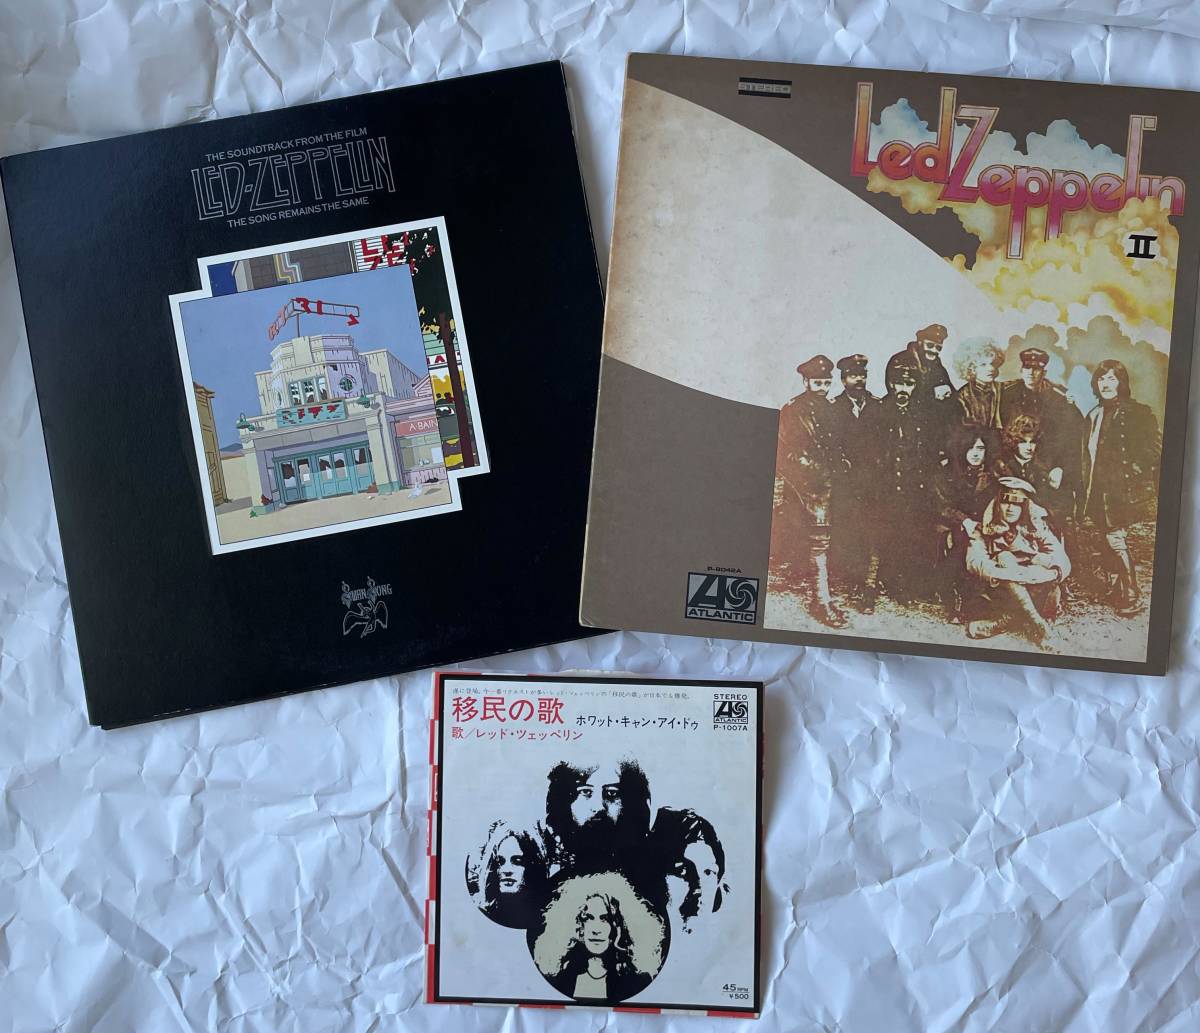 レッドツェッペリン　レコード　LP2枚+シングル「移民の歌」　THE SONG REMAINS THE SAME　Led ZeppelinⅡ　IMMIGRANT SONG_画像1